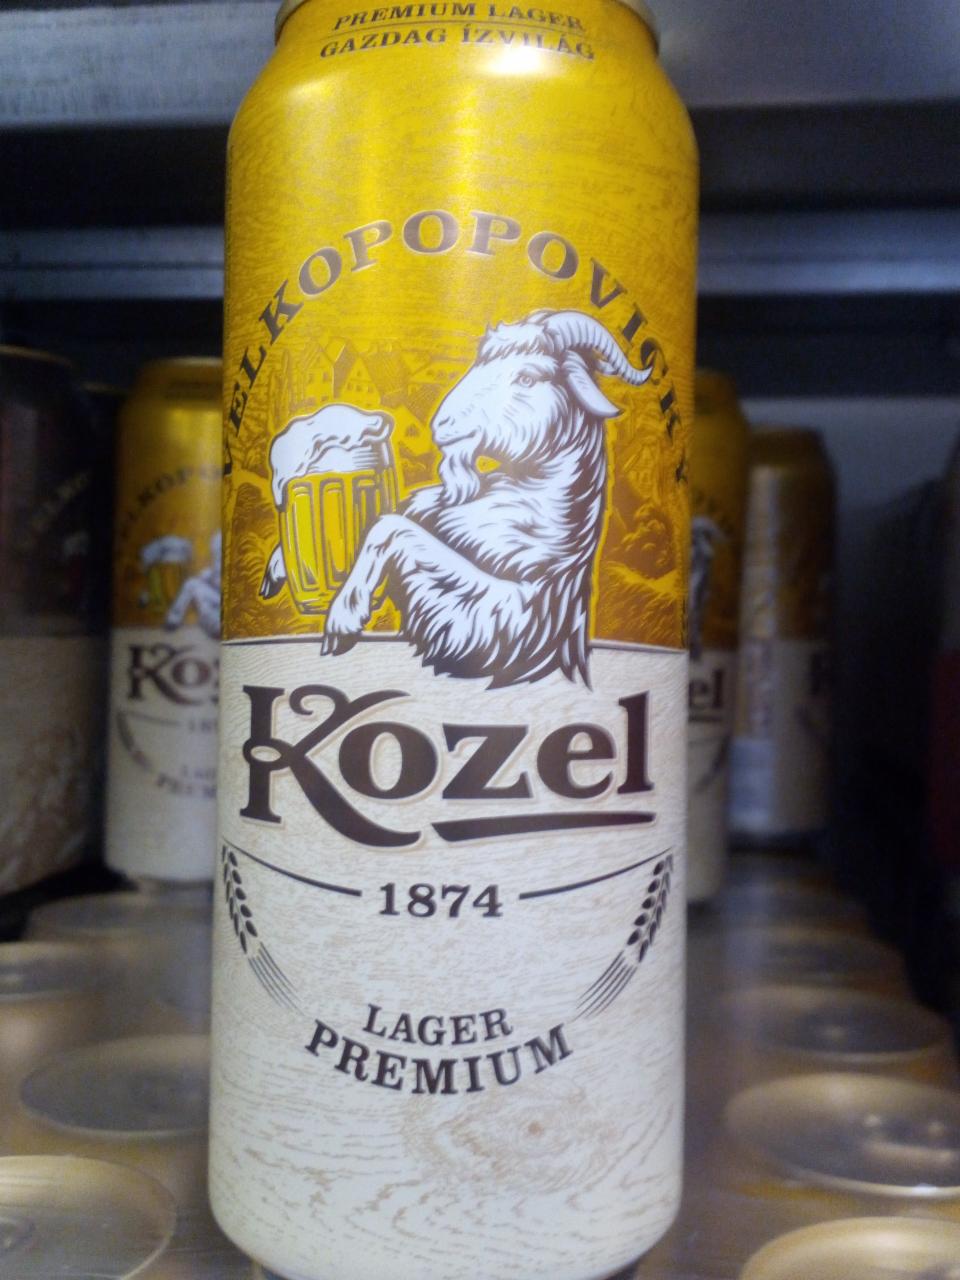 Képek - Prémium Lager minőségi világos sör Kozel